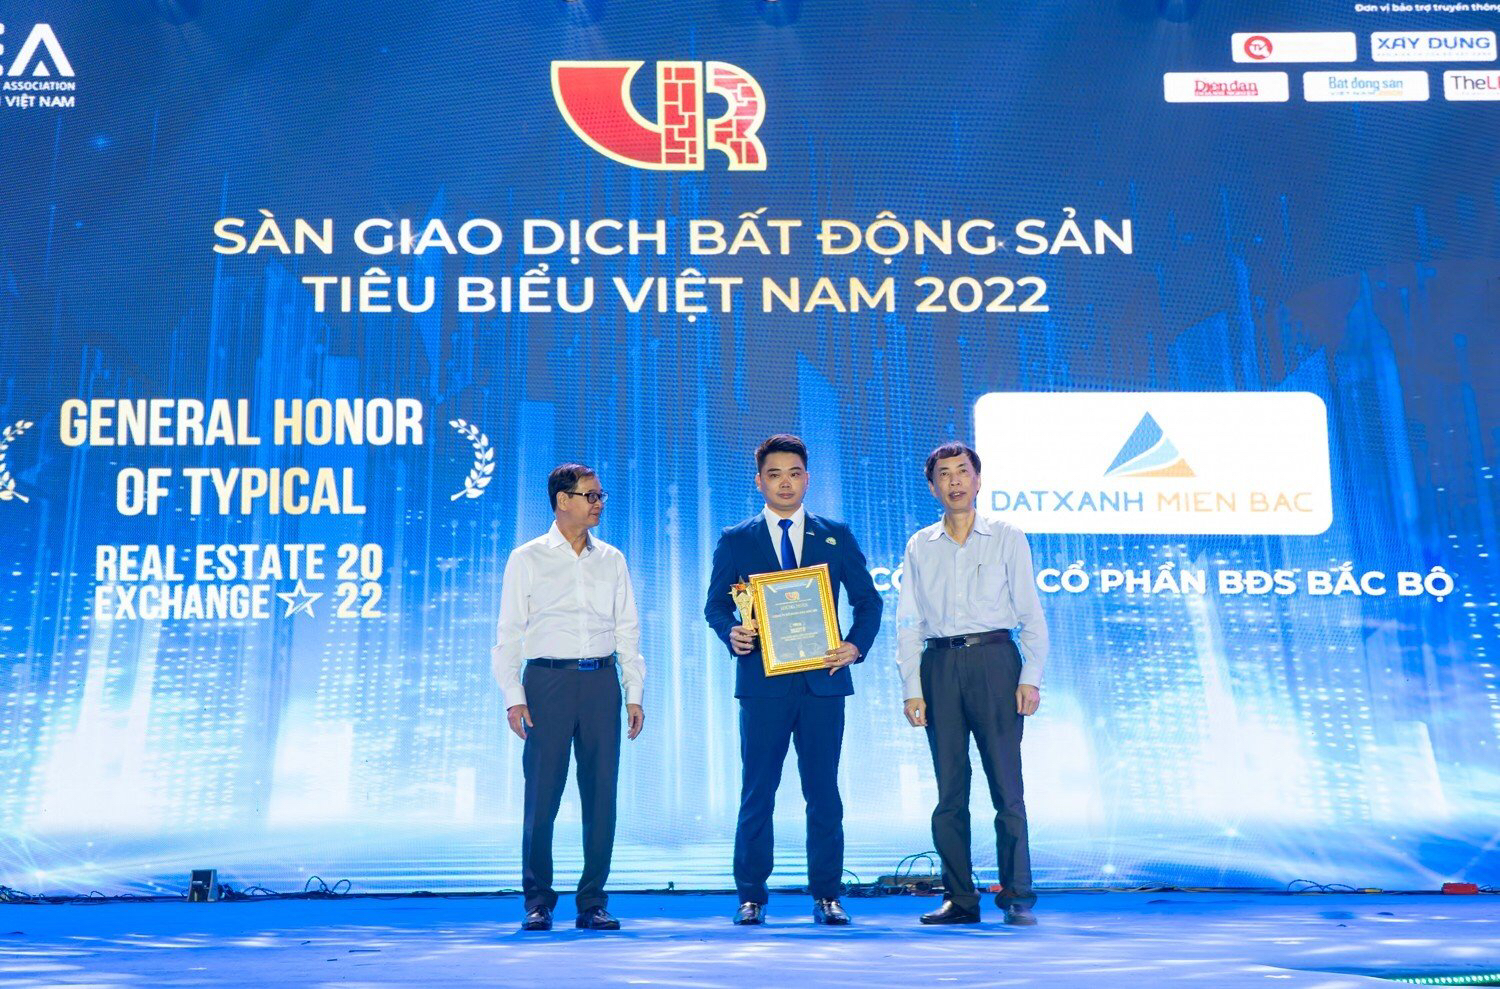 Công ty CP Bất động sản Bắc Bộ nhận giải sàn giao dịch Bất động sản tiêu biểu Việt Nam 2022